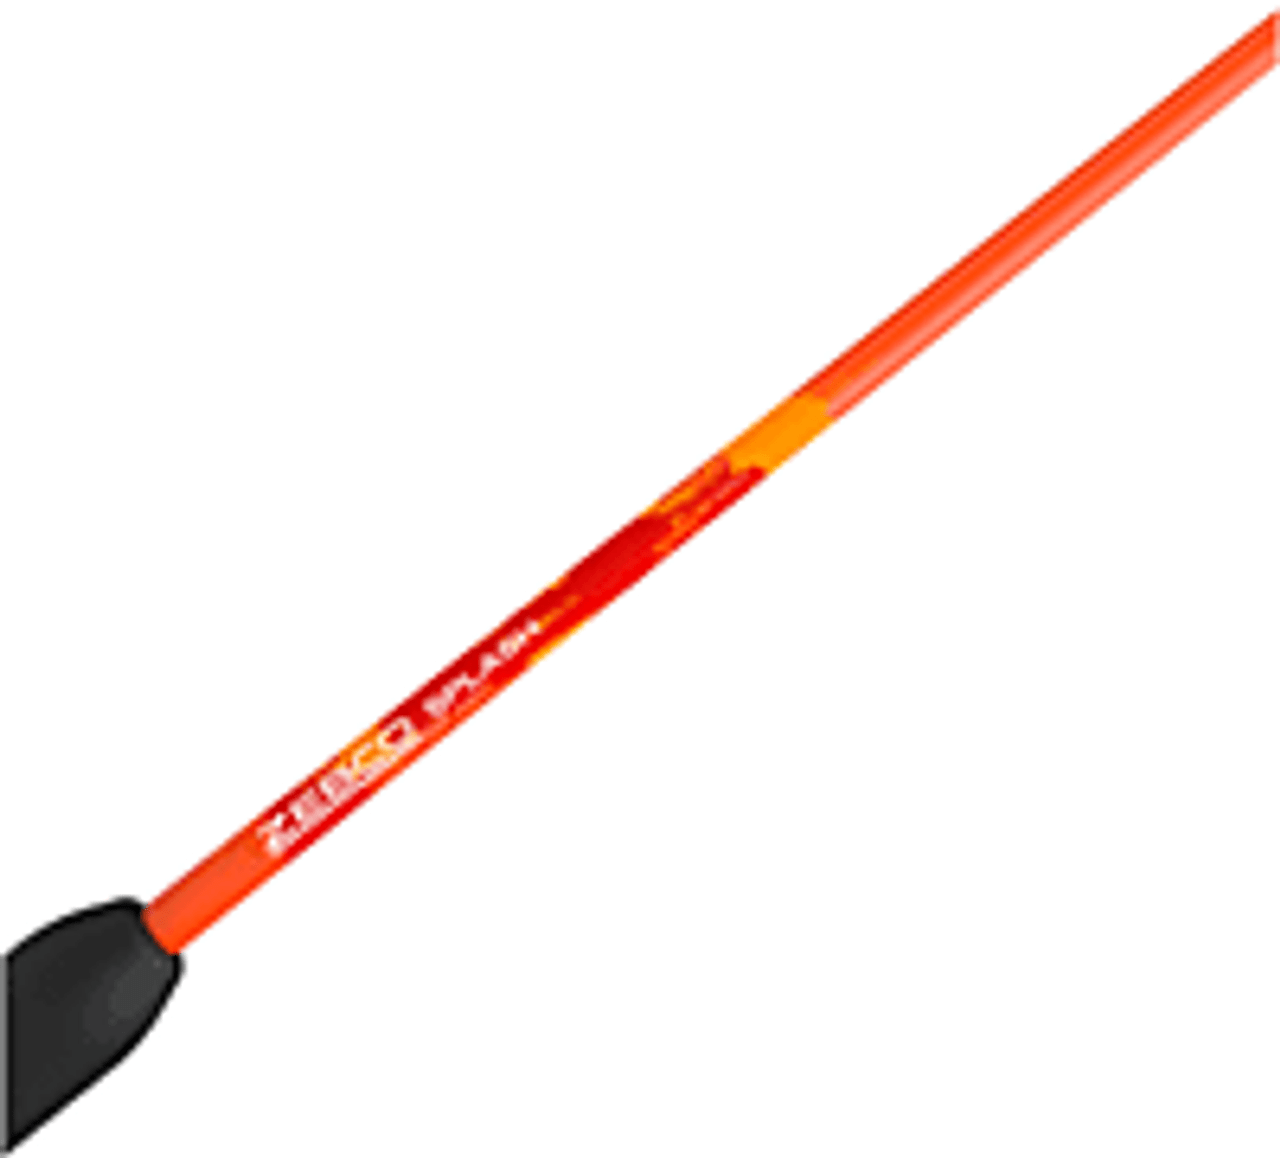 Zebco Splash 6' Medium Casting Rod, Orange